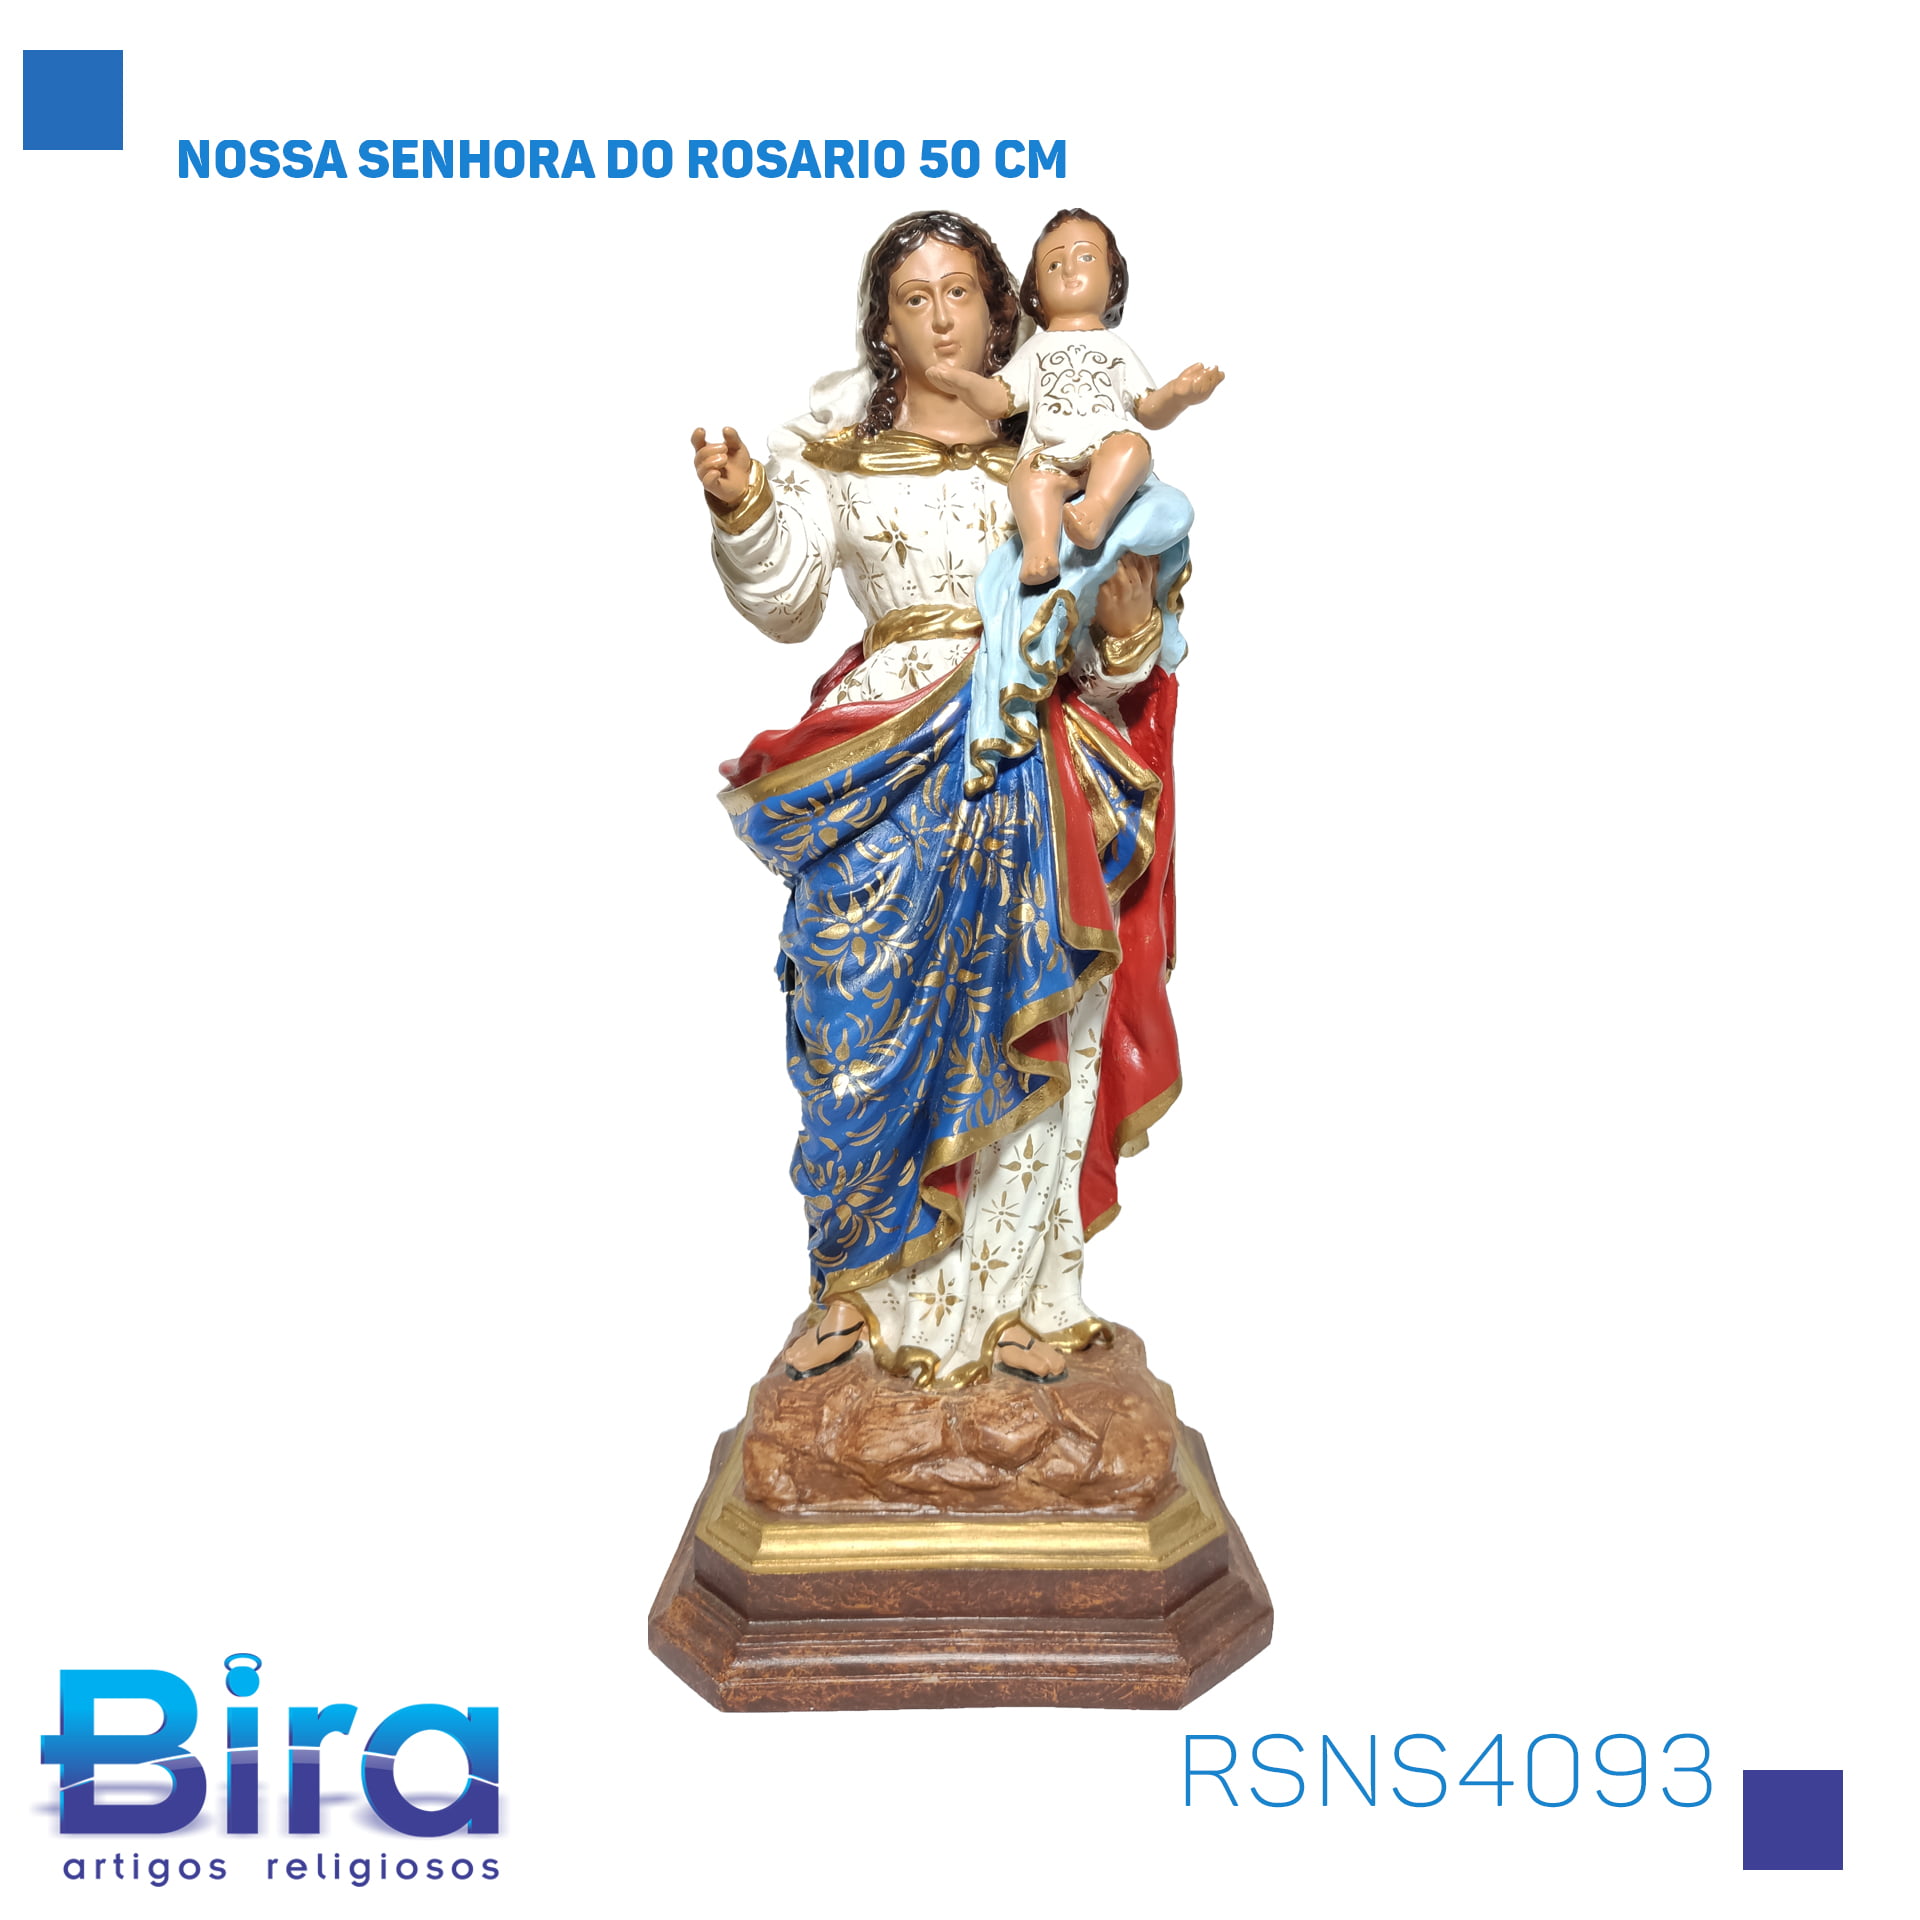 Bira Artigos Religiosos - NOSSA SENHORA DO ROSARIO 50 CM Cód. RSNS4093